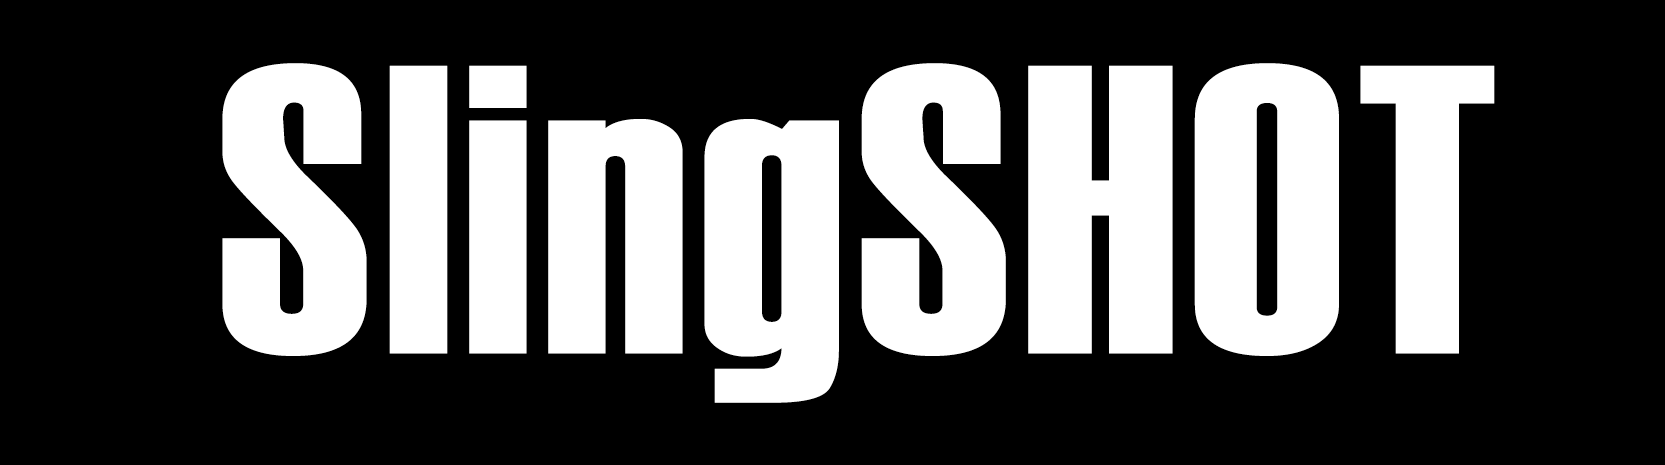 slingshotbandaz logo